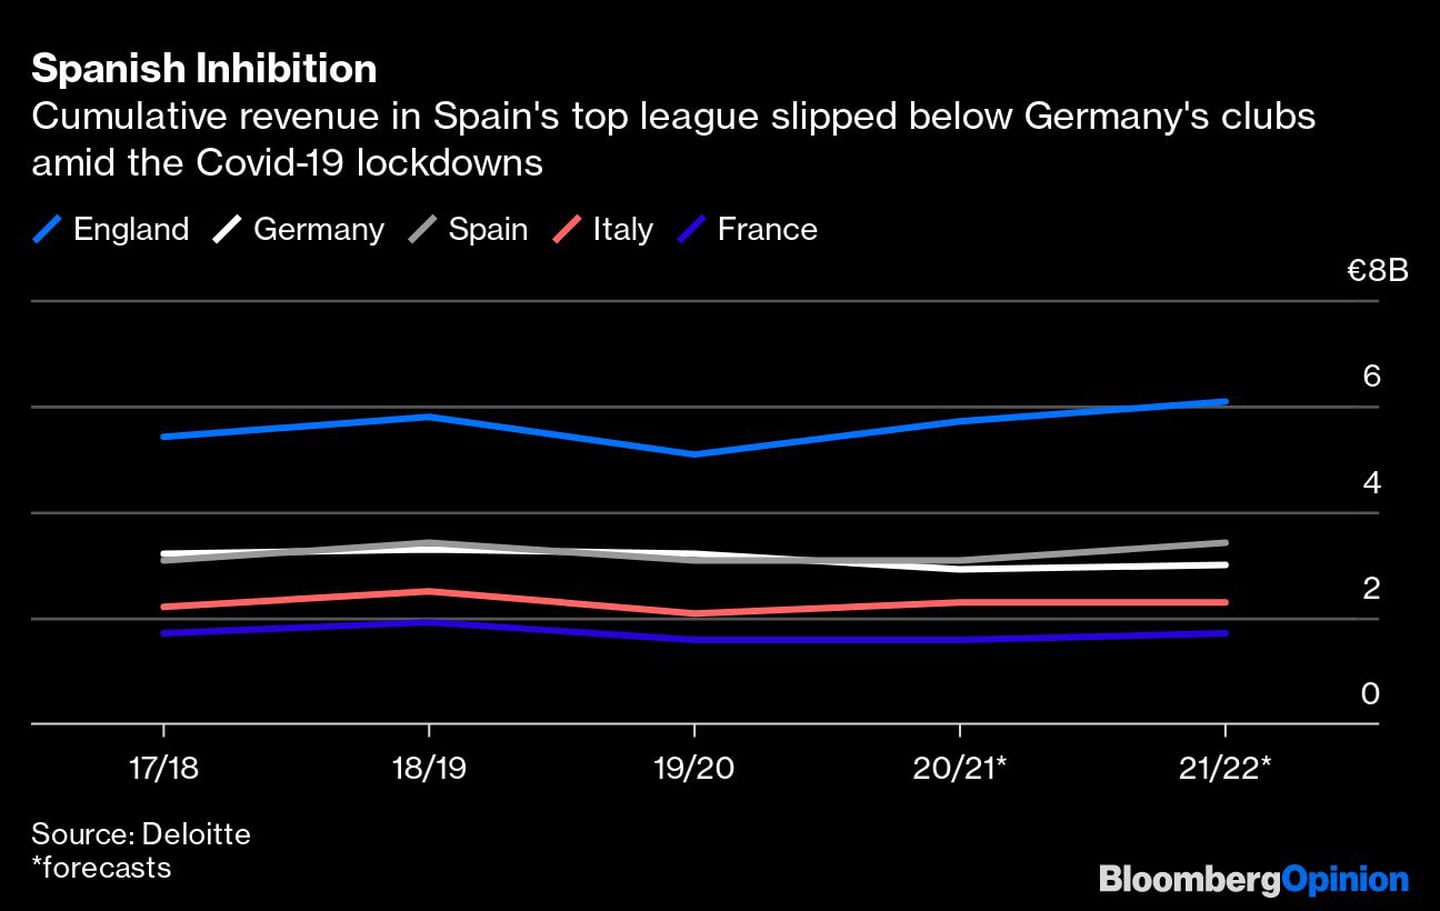 Ingresos acumulados de la primera división de España caen debajo de los clubes alemanes por los encierros de Covid-19.dfd